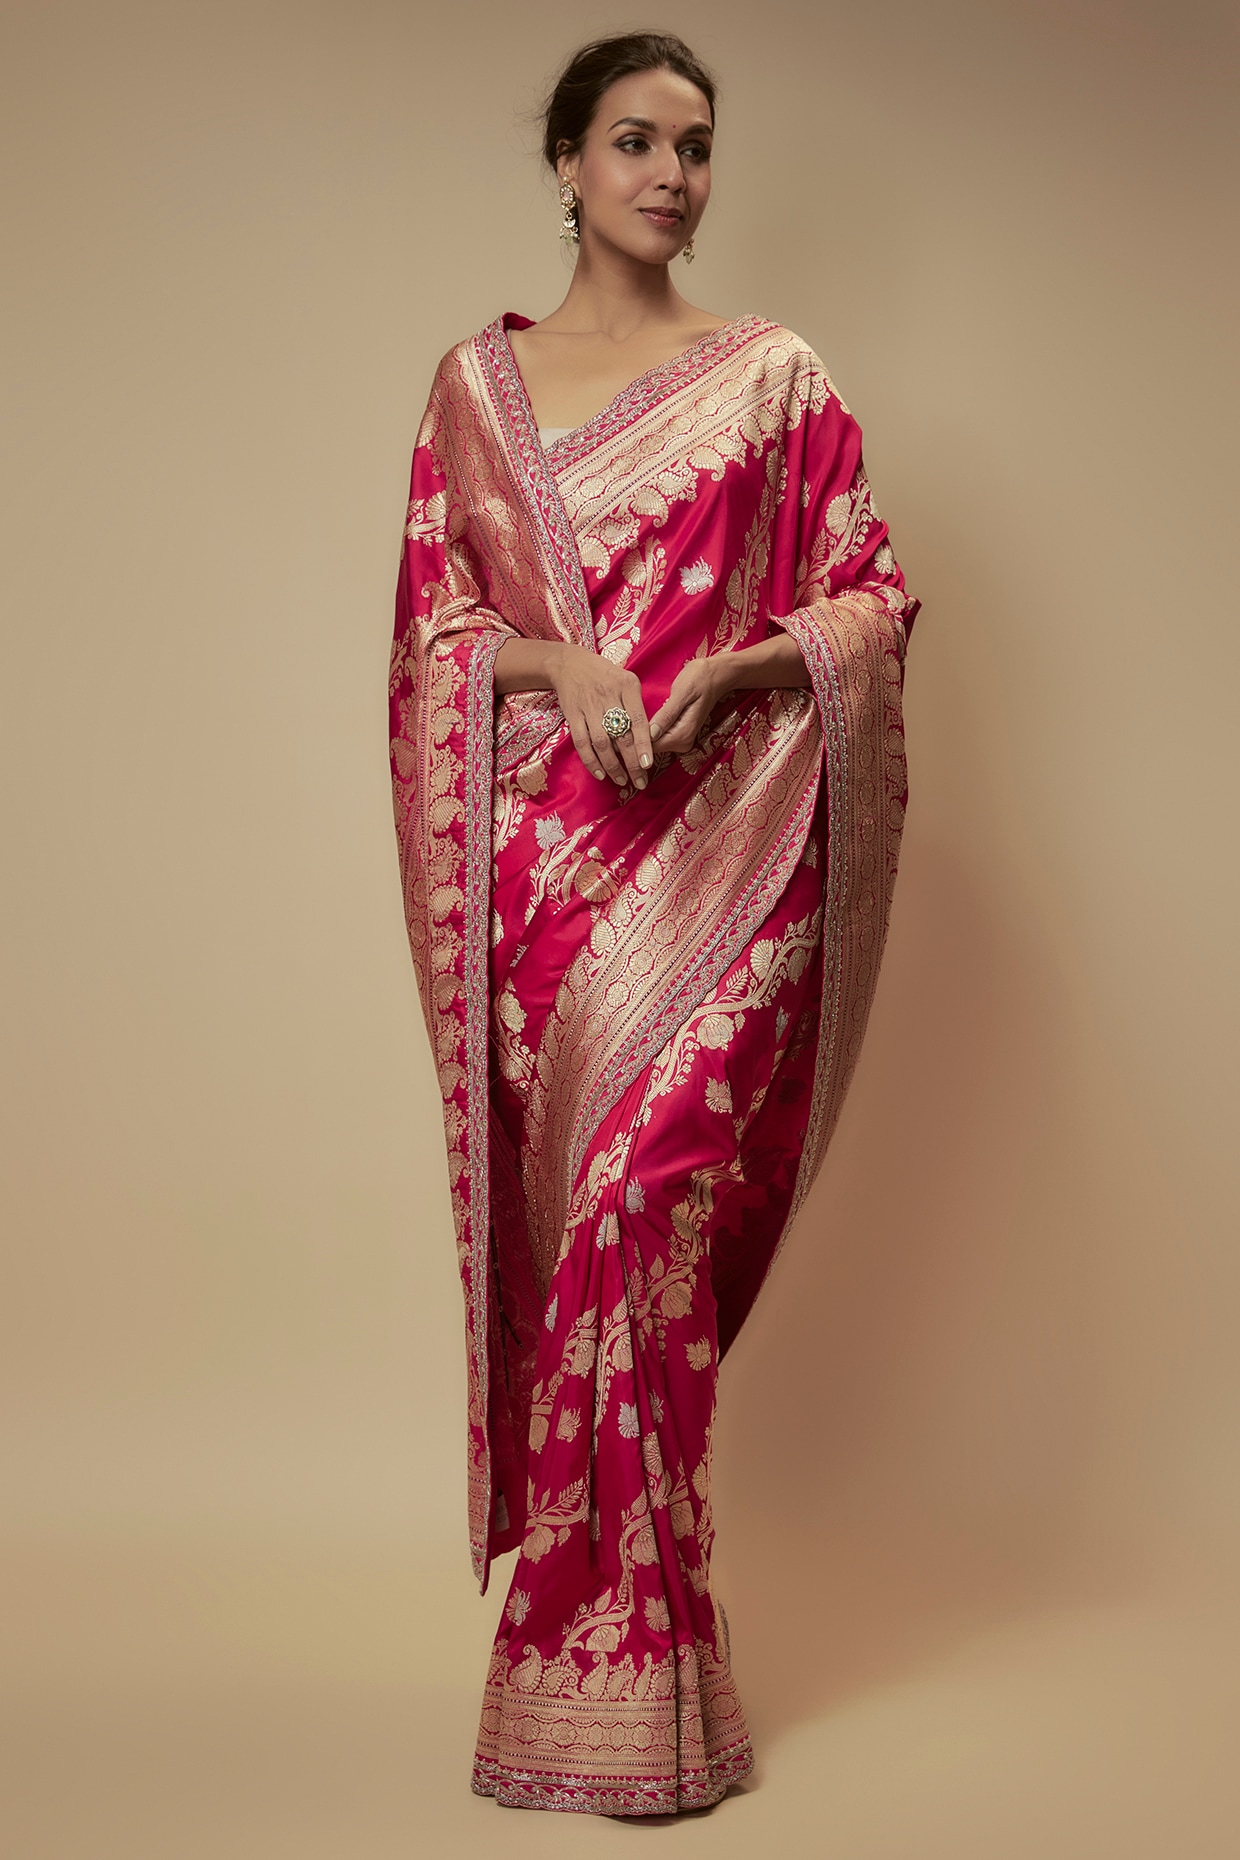 Ready made Nauvari saree | Indian bridal outfits